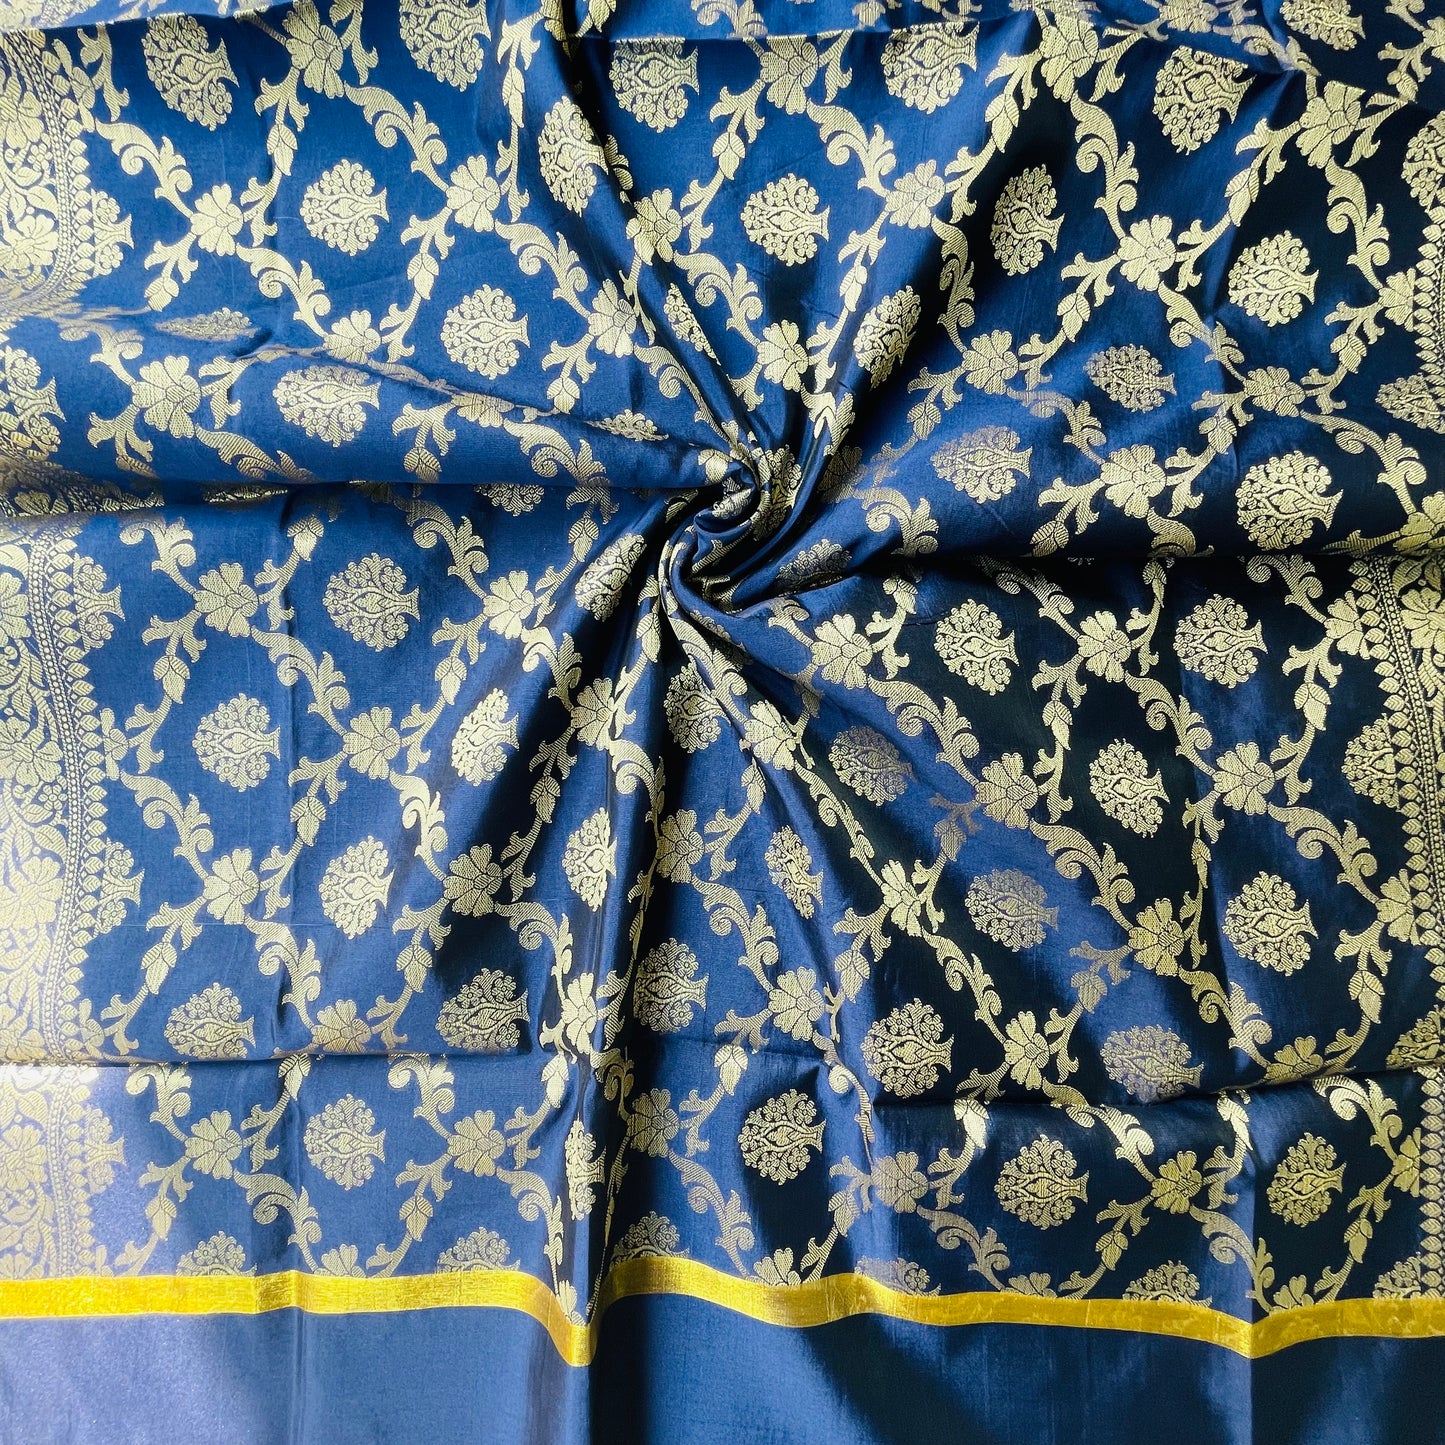 Banarasi Cotton Silk Woven Dupatta with gold Zari - Navy Blue